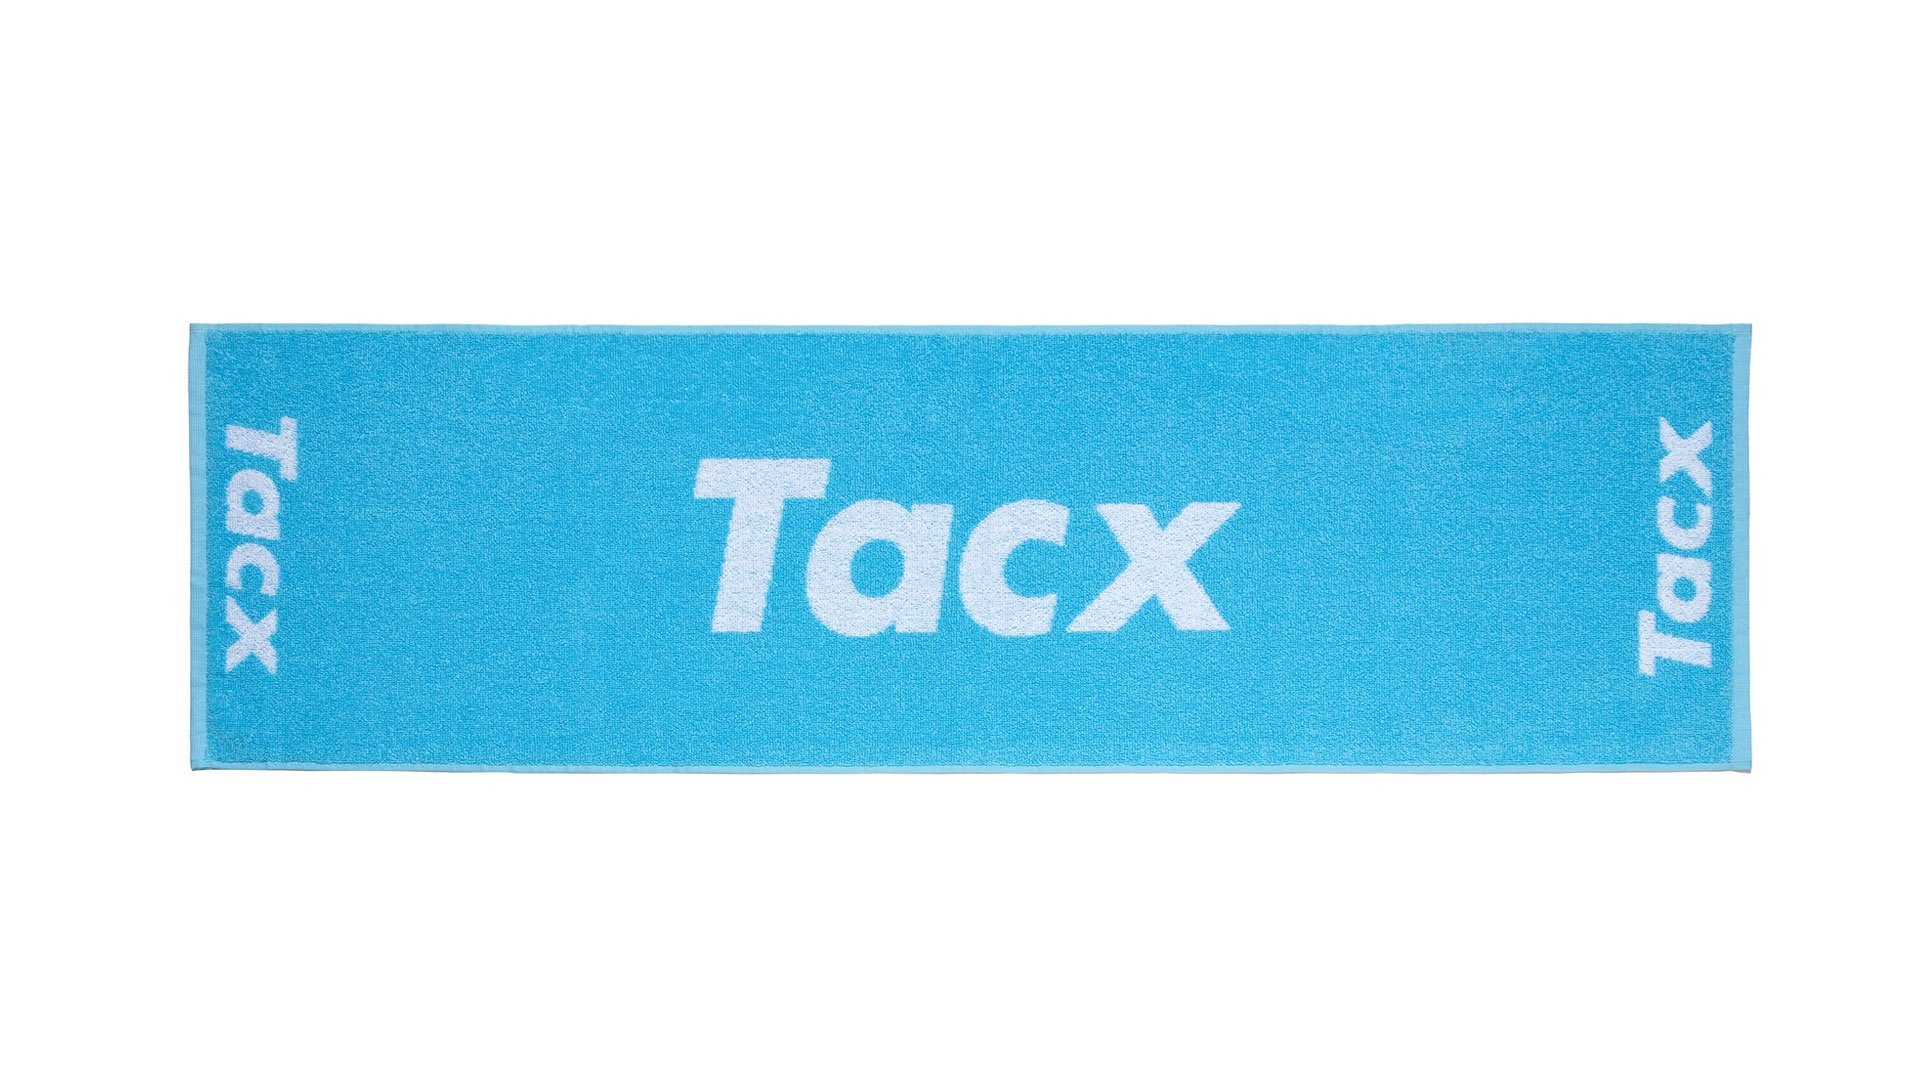 Tilbehør - Hometrainer - Hometrainer udstyr - Tacx Håndklæde til Hometrainer